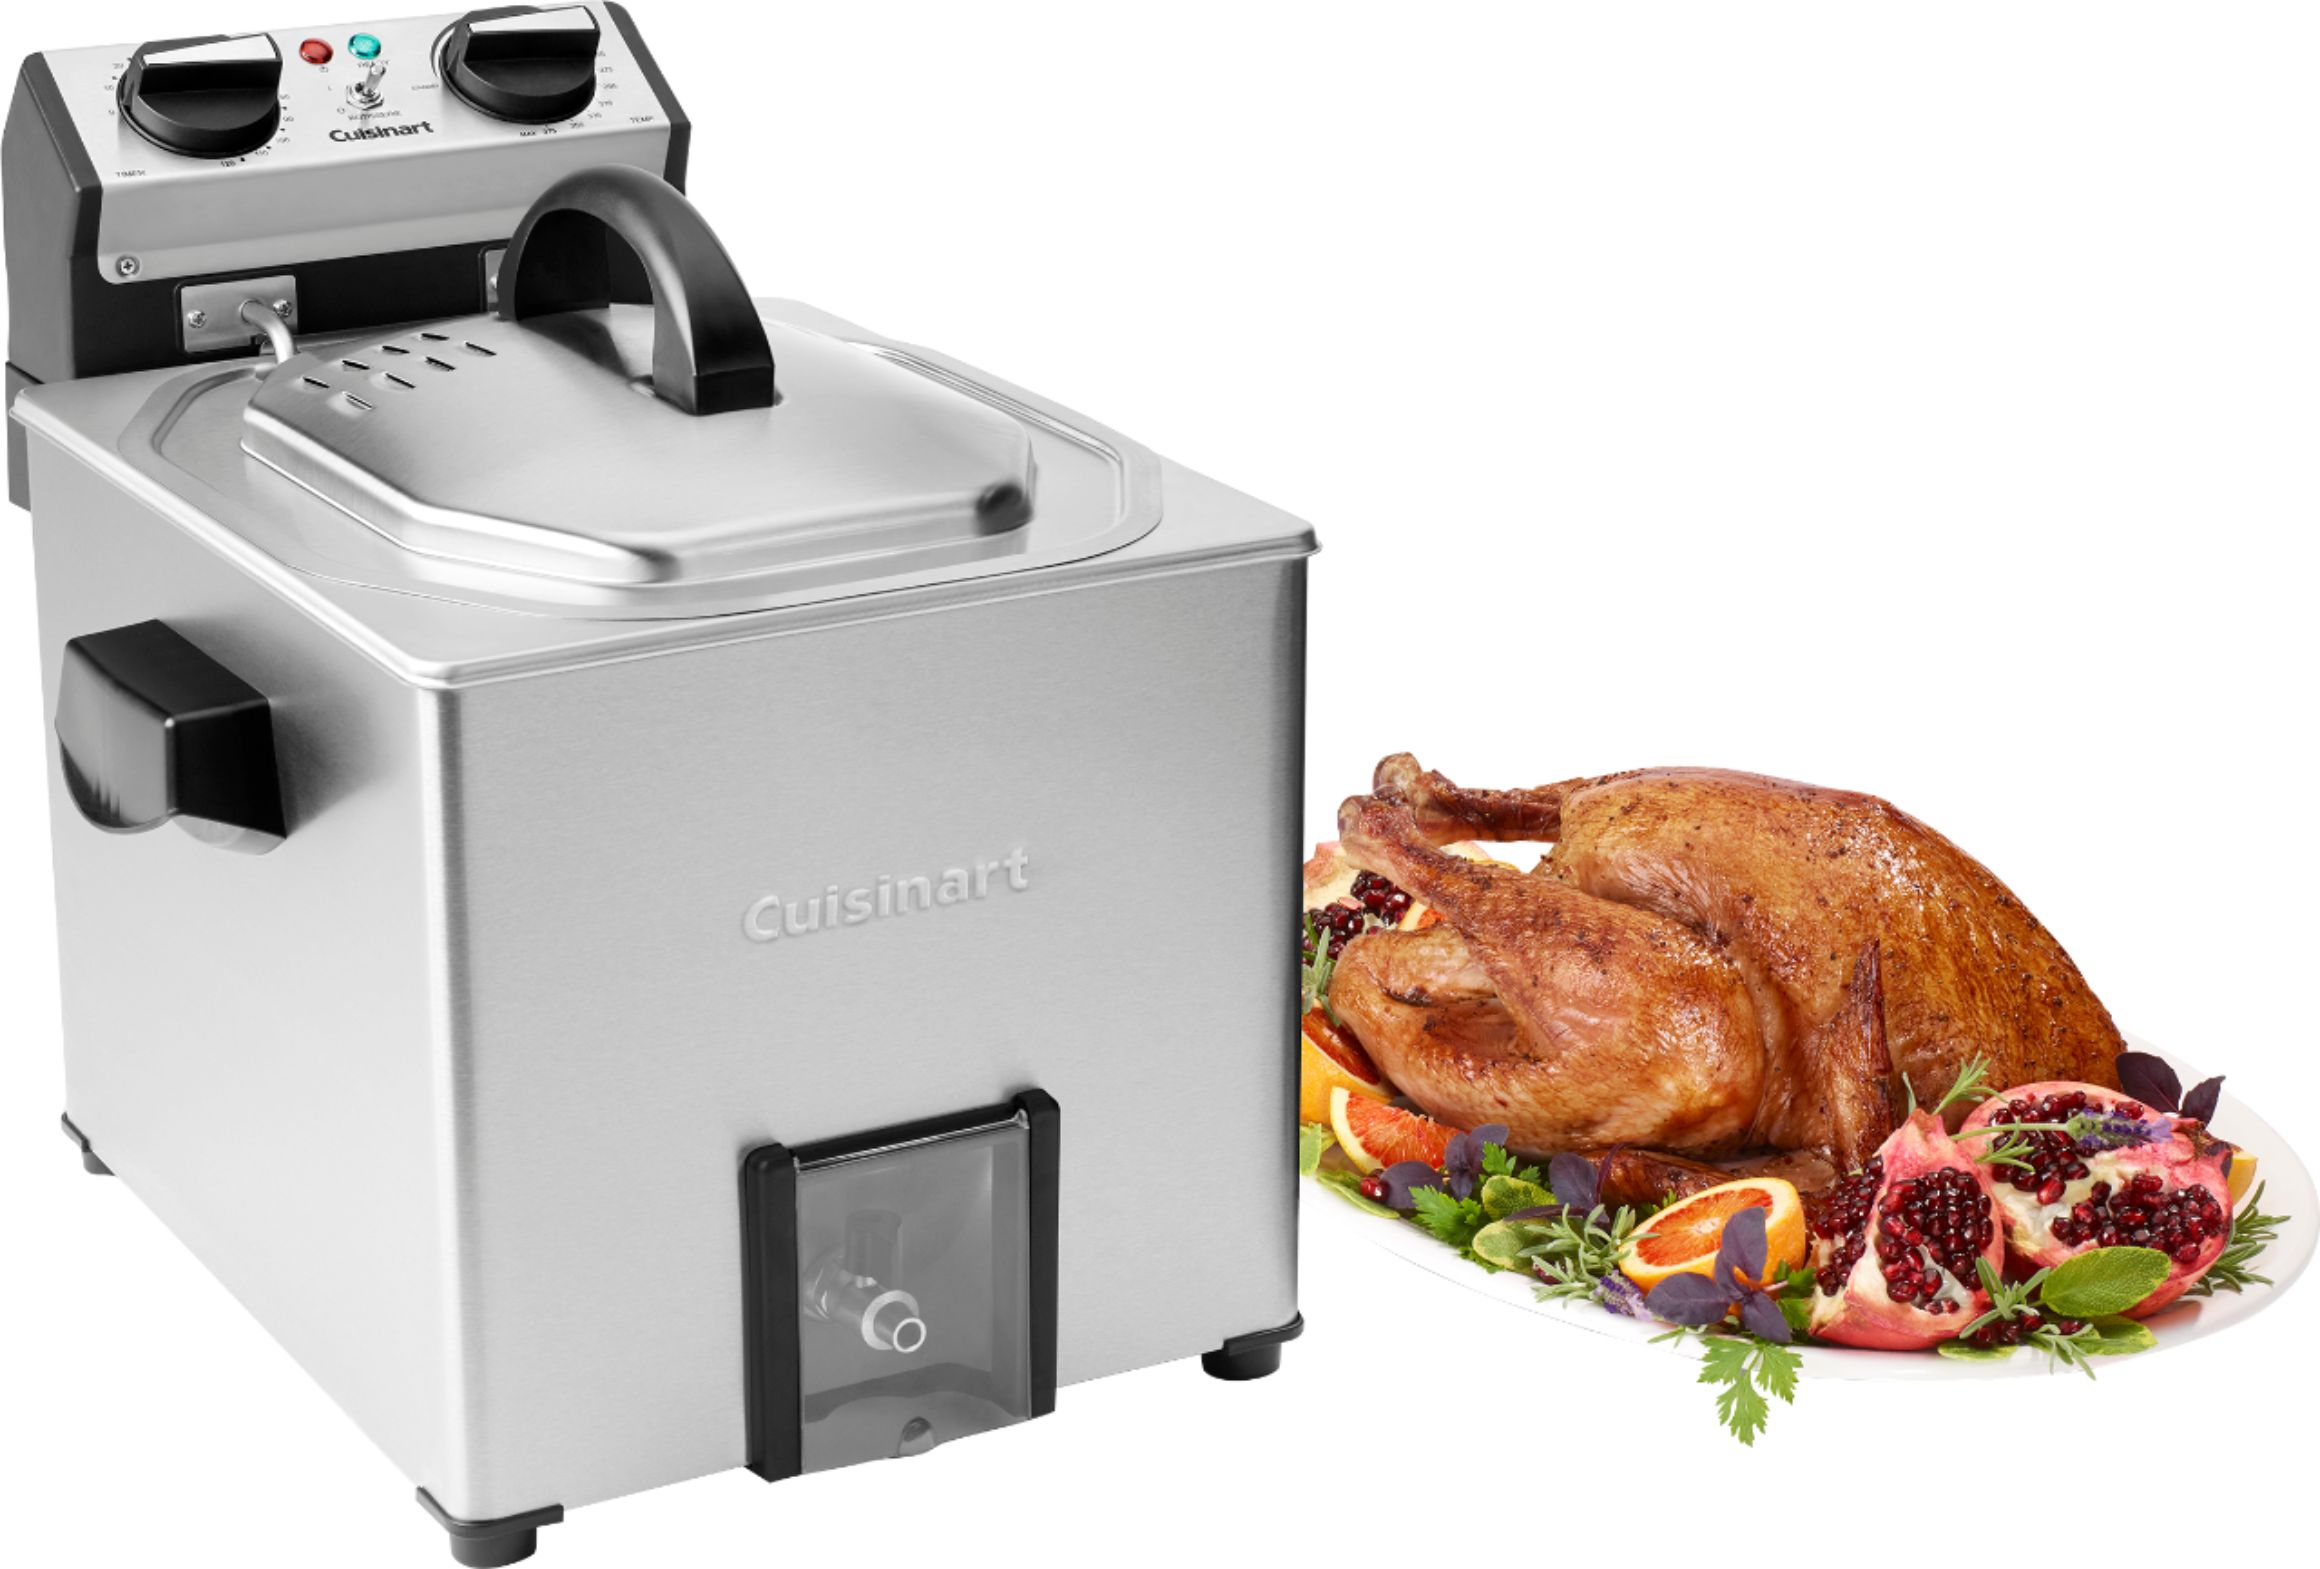 Cuisinart Deep Fryer, 1.1 Quart - appliances - by owner - sale - craigslist